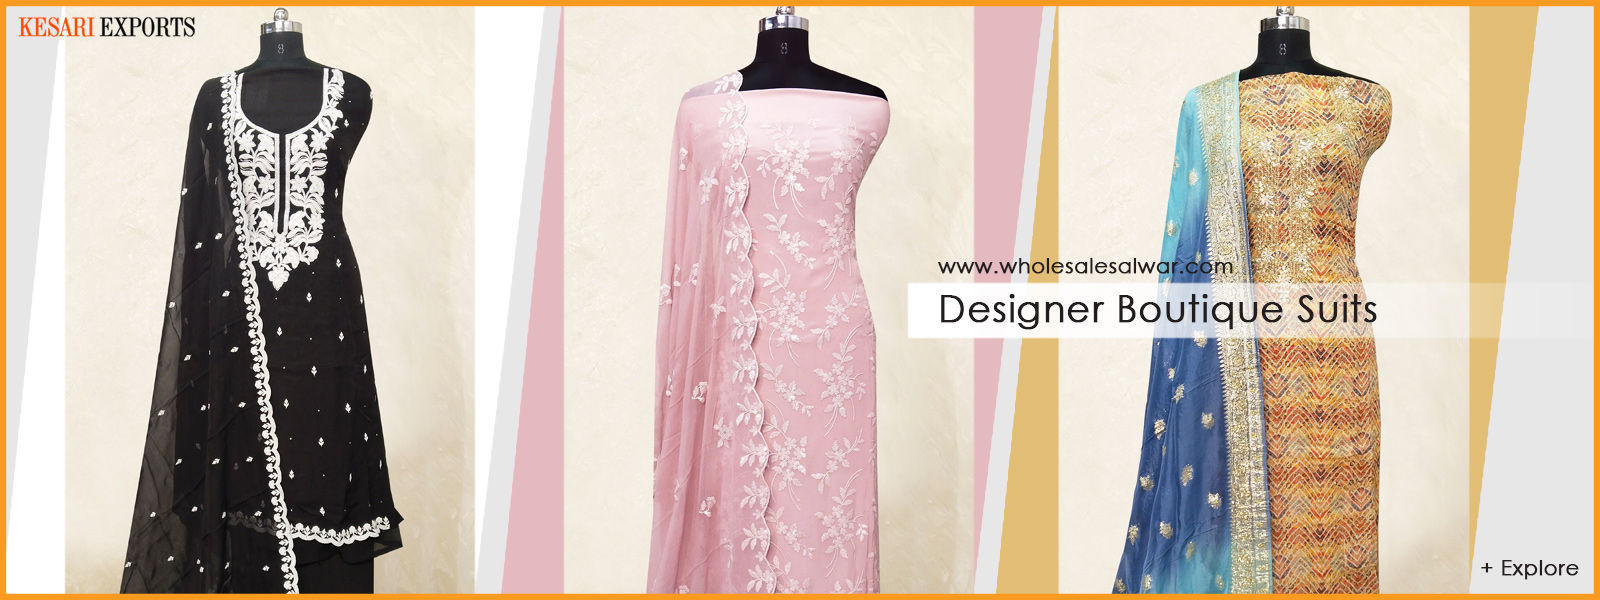 Wholesale Salwar Kameez: Readymade Branded Ladies Suits - Kesari ...